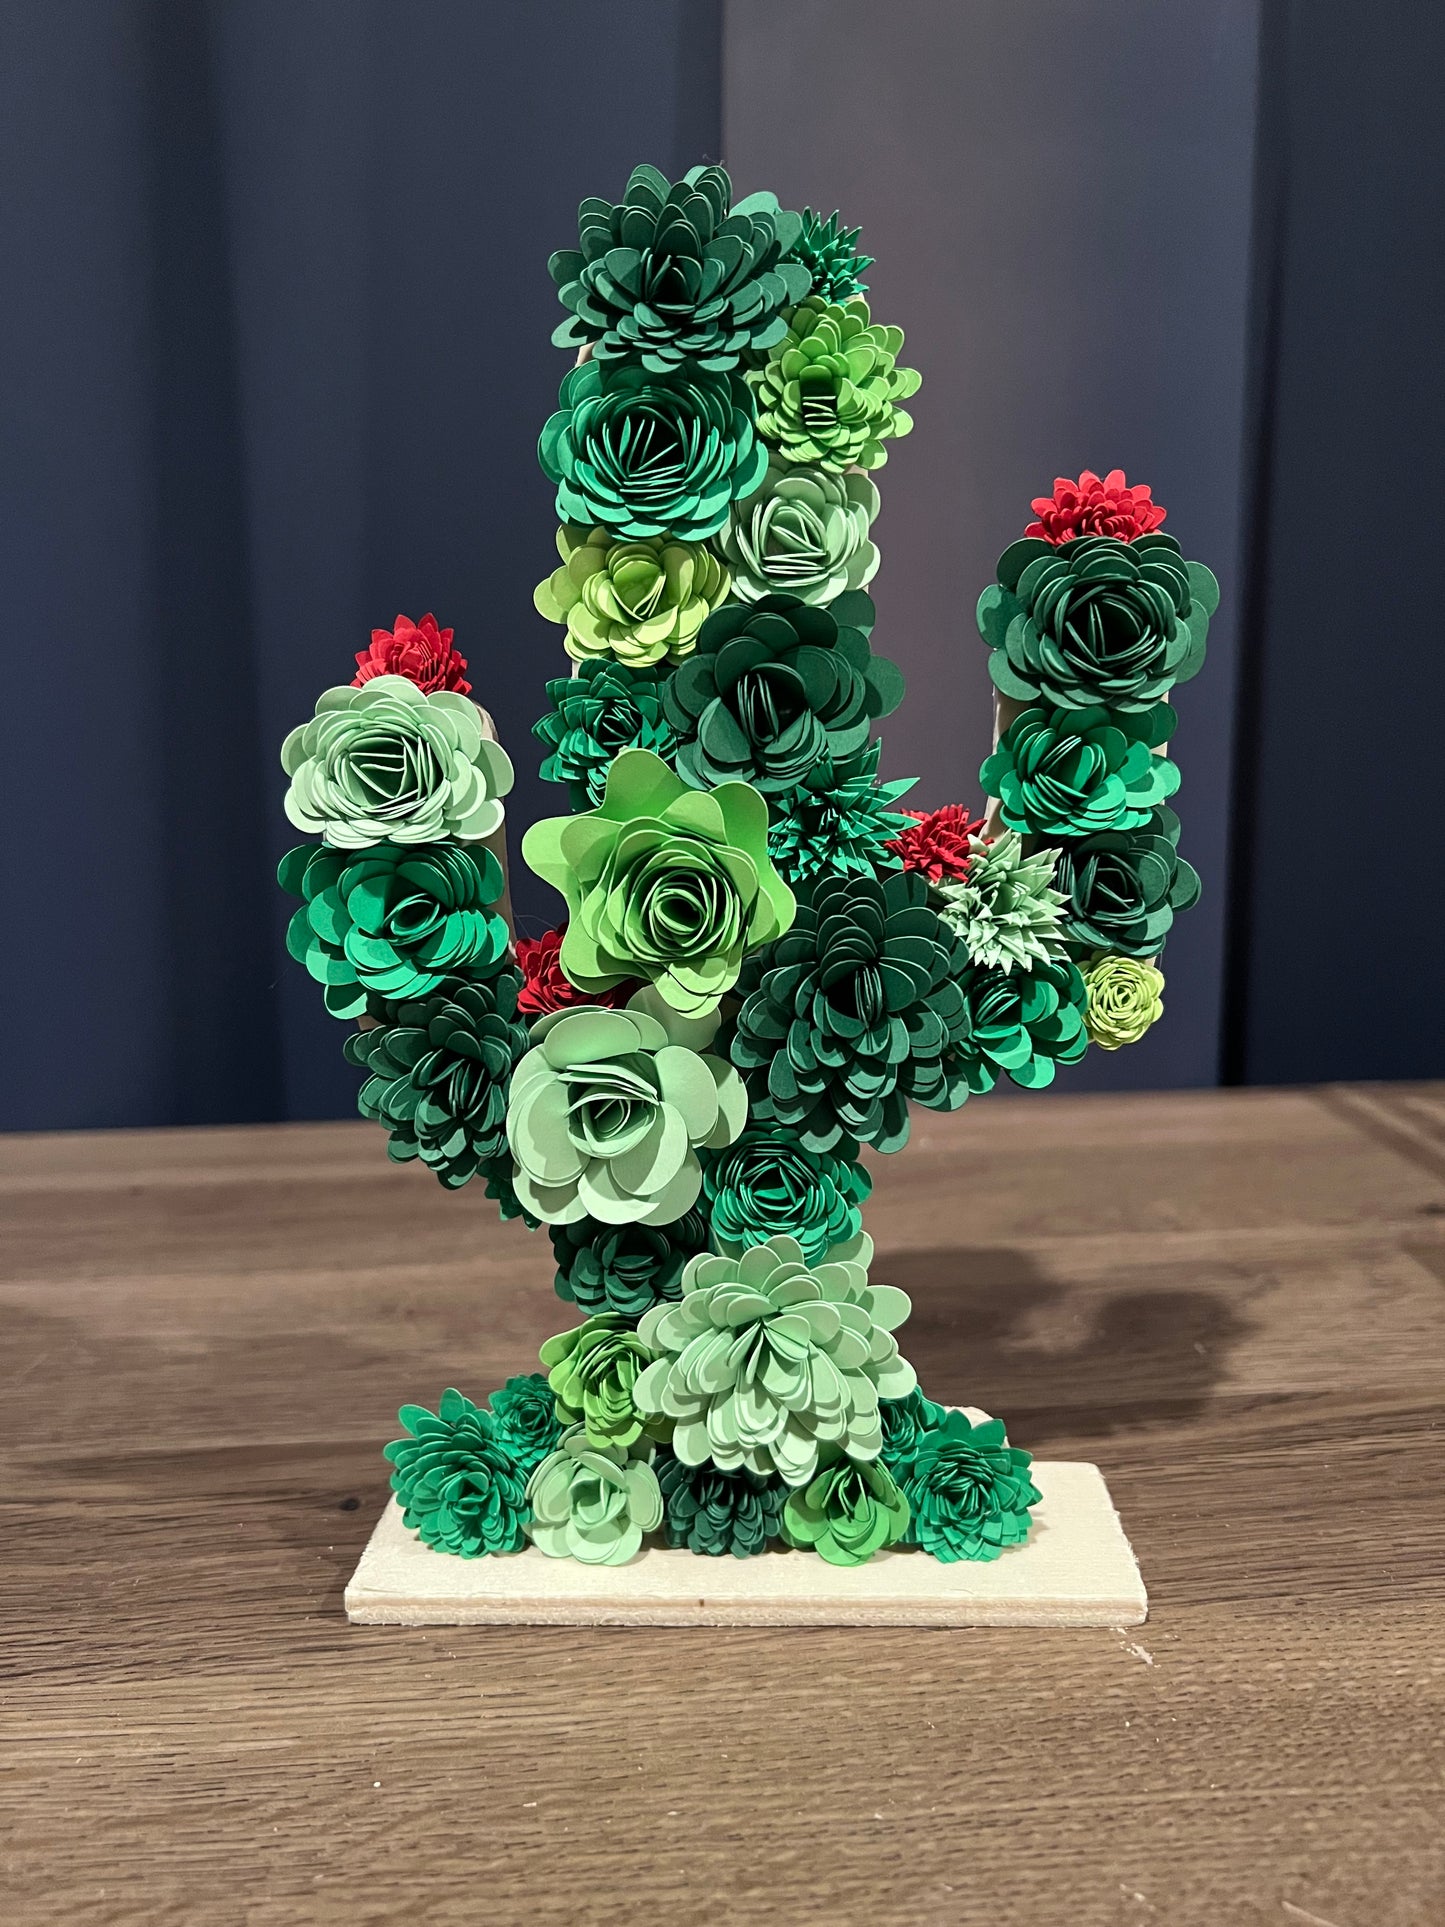 8" x 5” Paper Flower Cactus